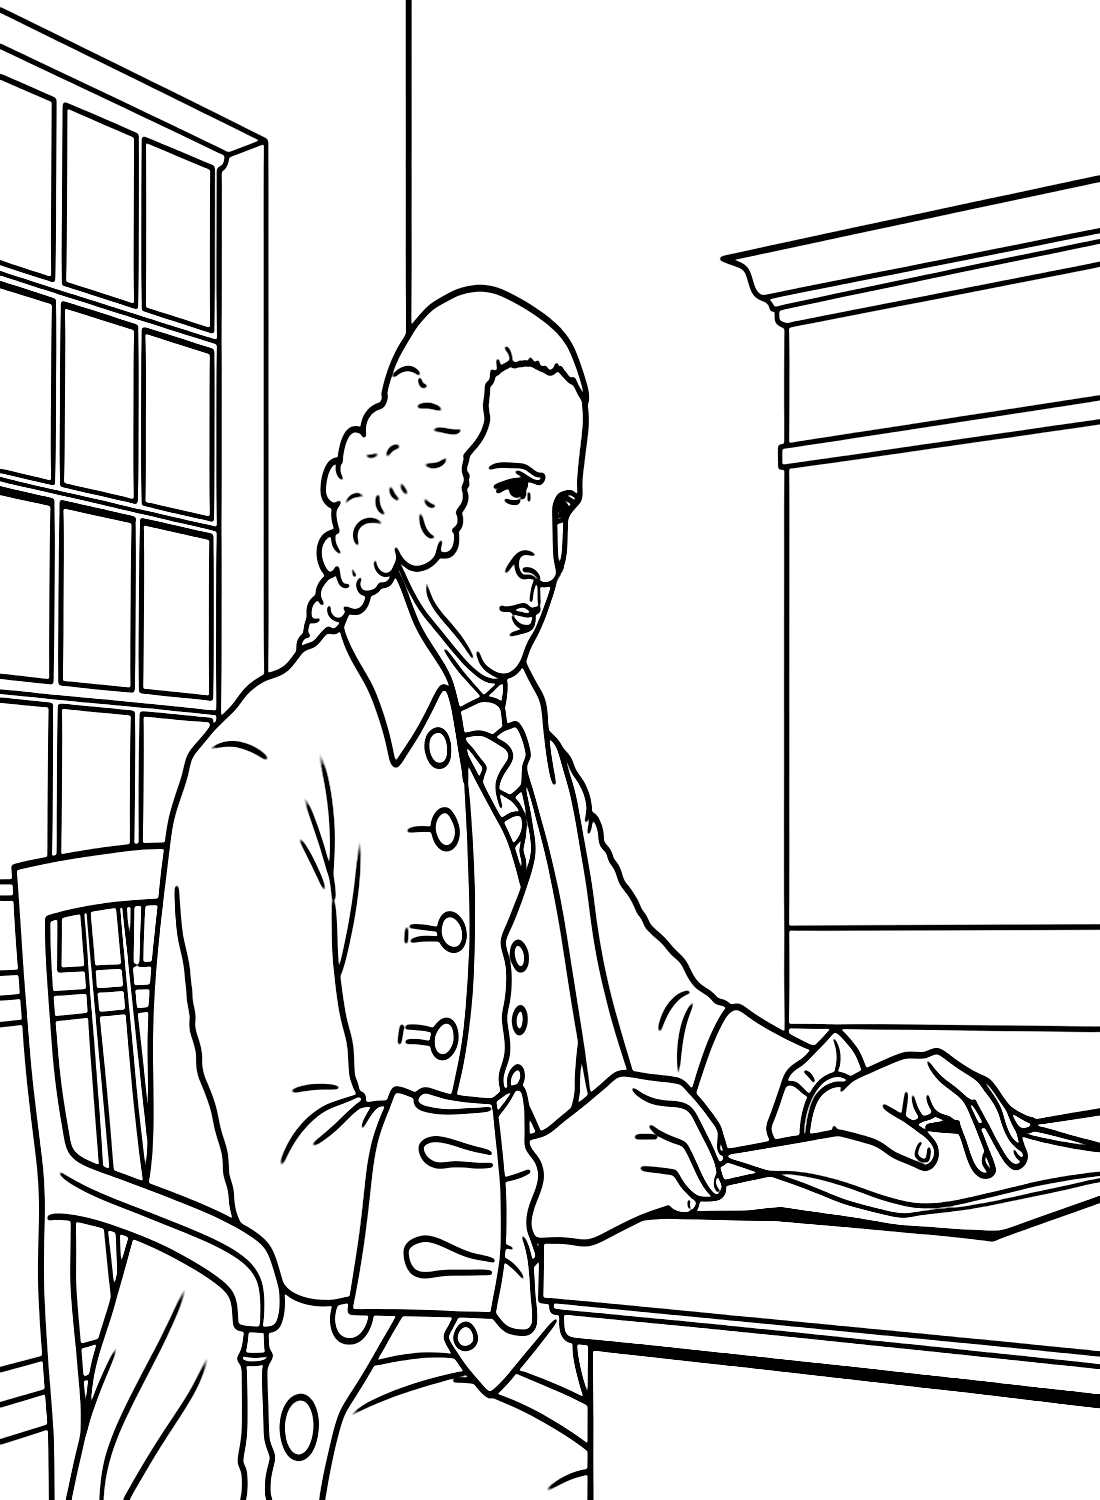 Advogado Alexander Hamilton de Alexander Hamilton